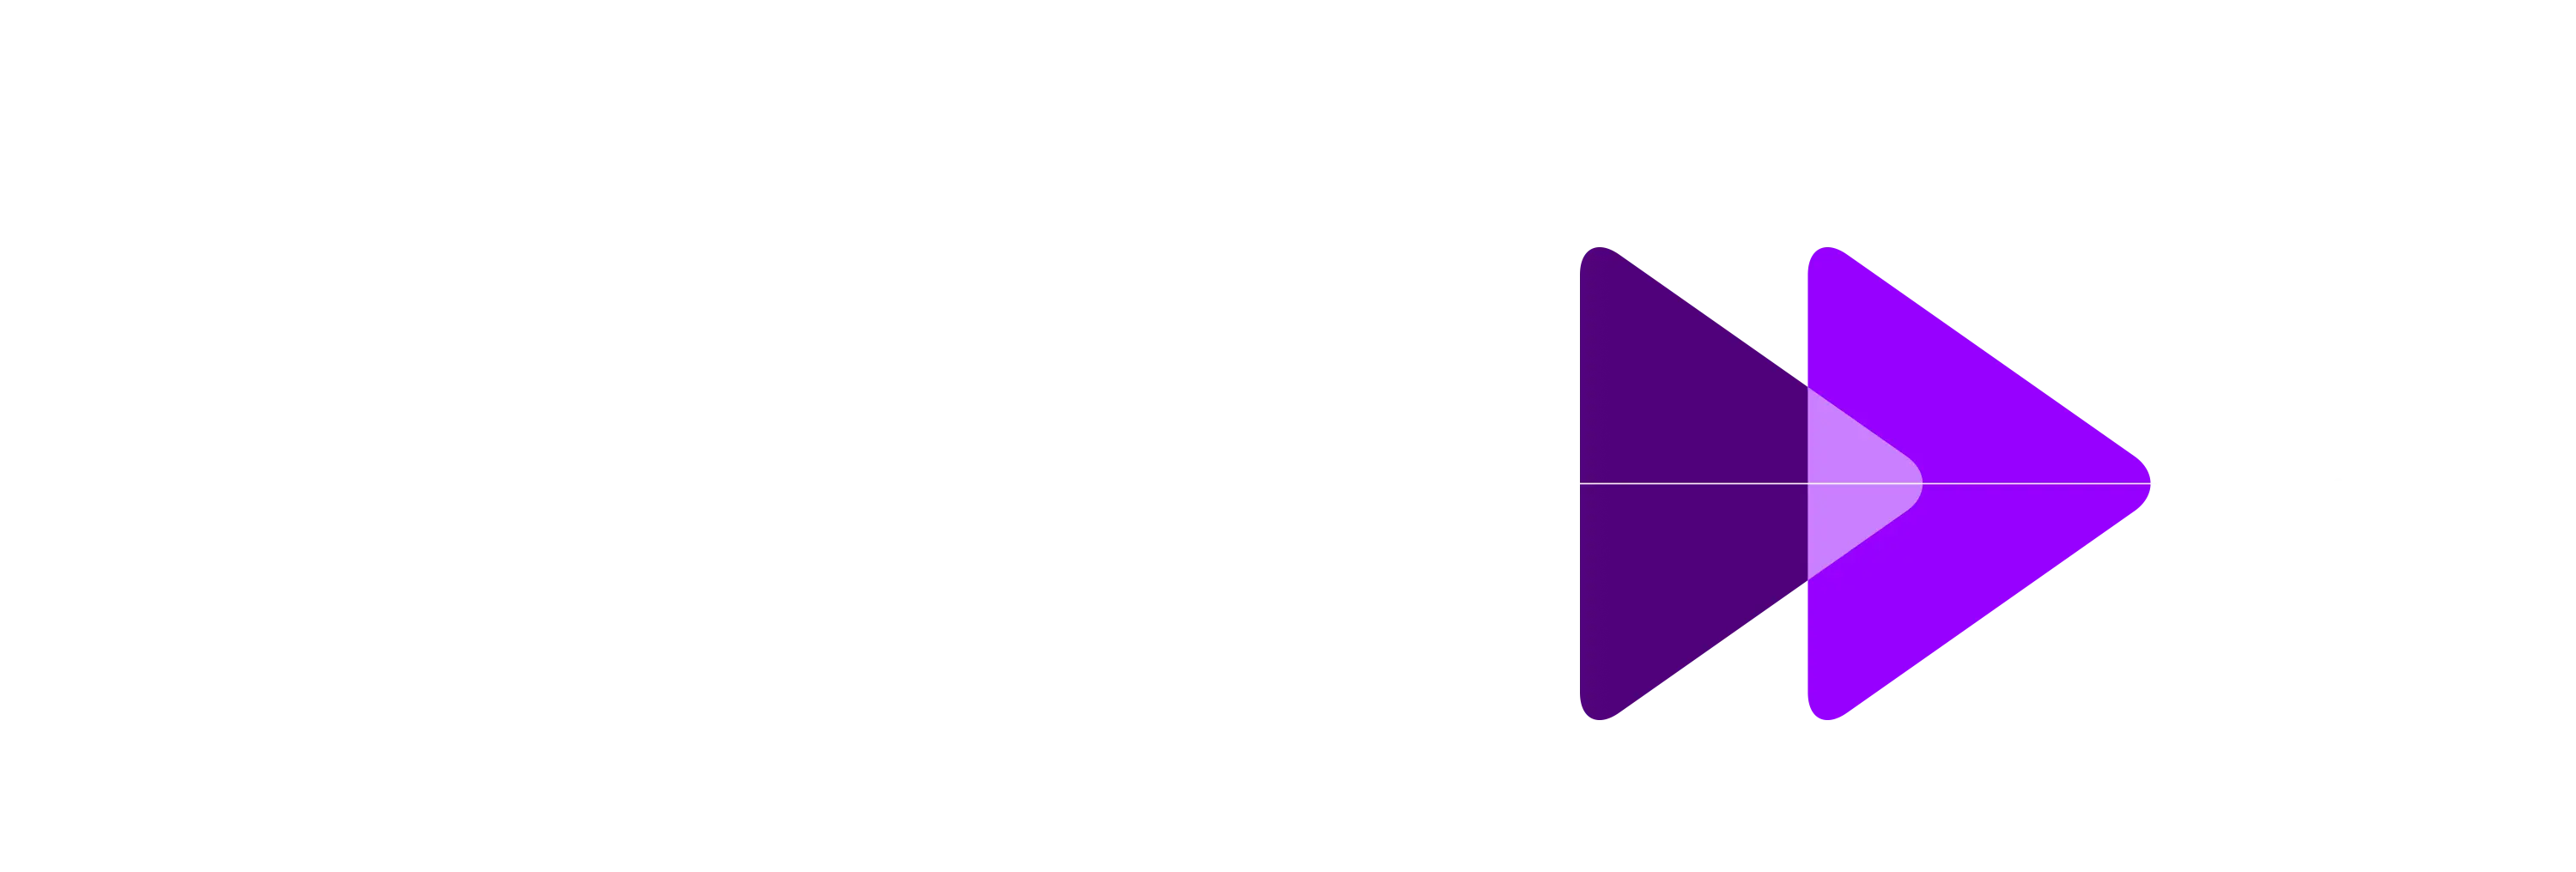 image of arrows